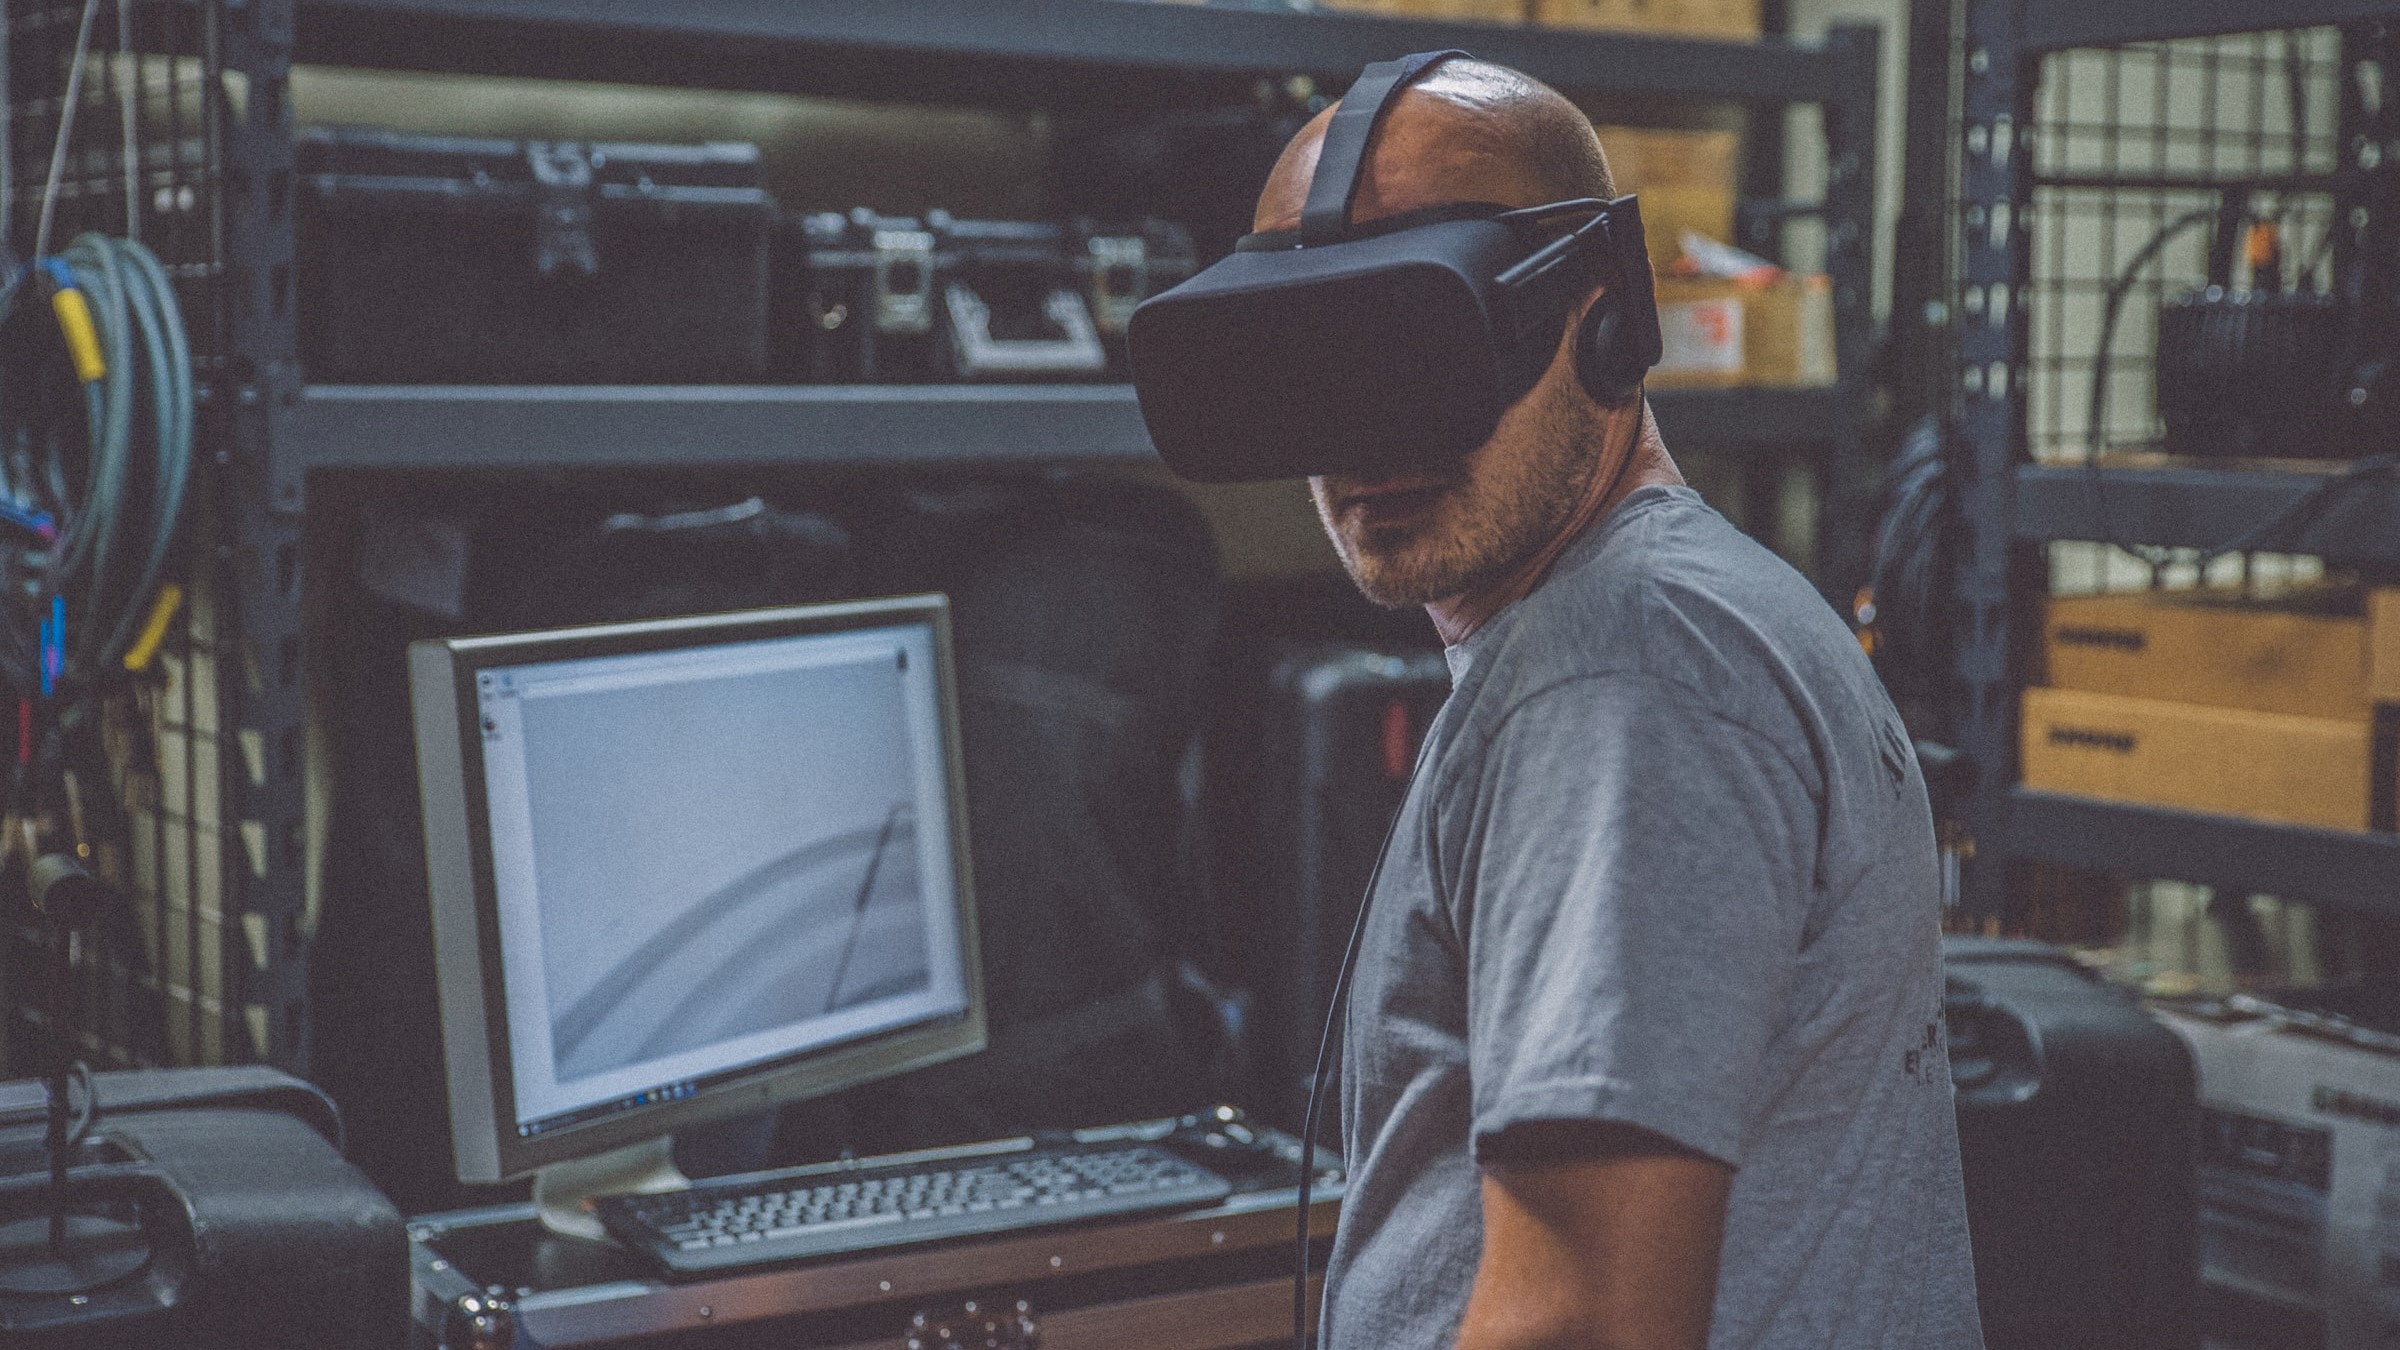 PC VR Ready : les meilleures configurations pour la réalité virtuelle